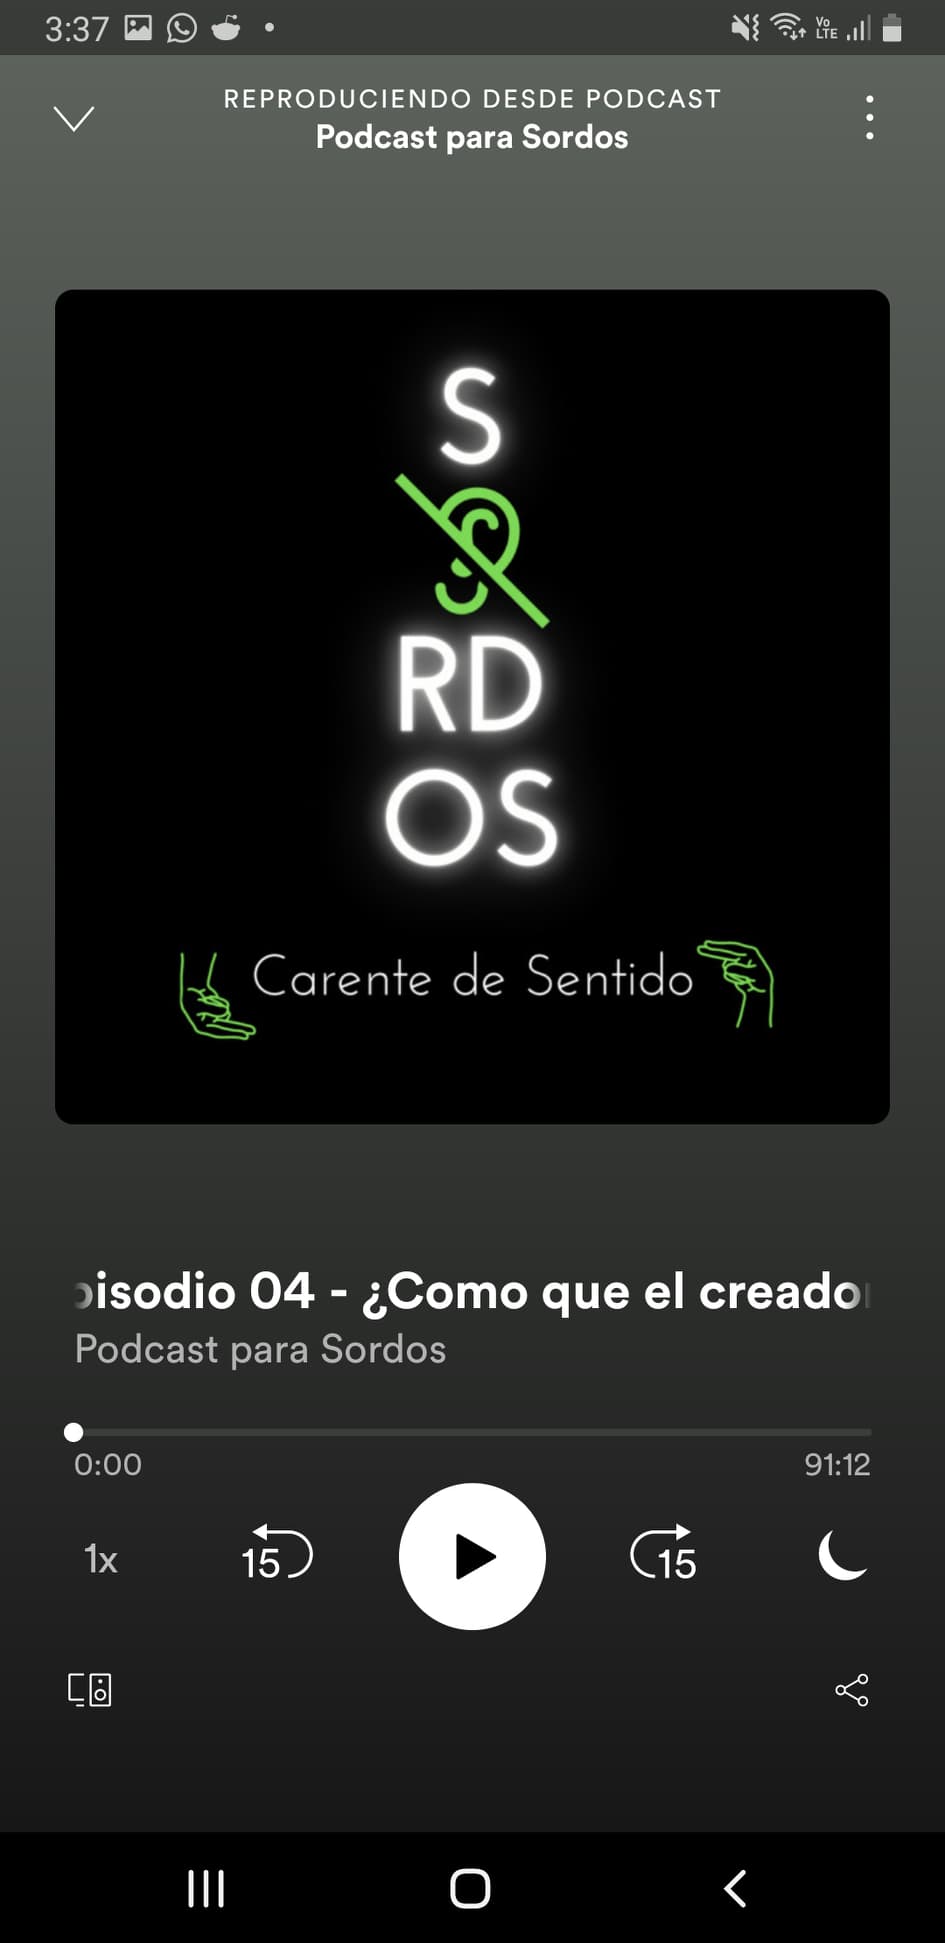 Podcast para Sordos - Episodio 4